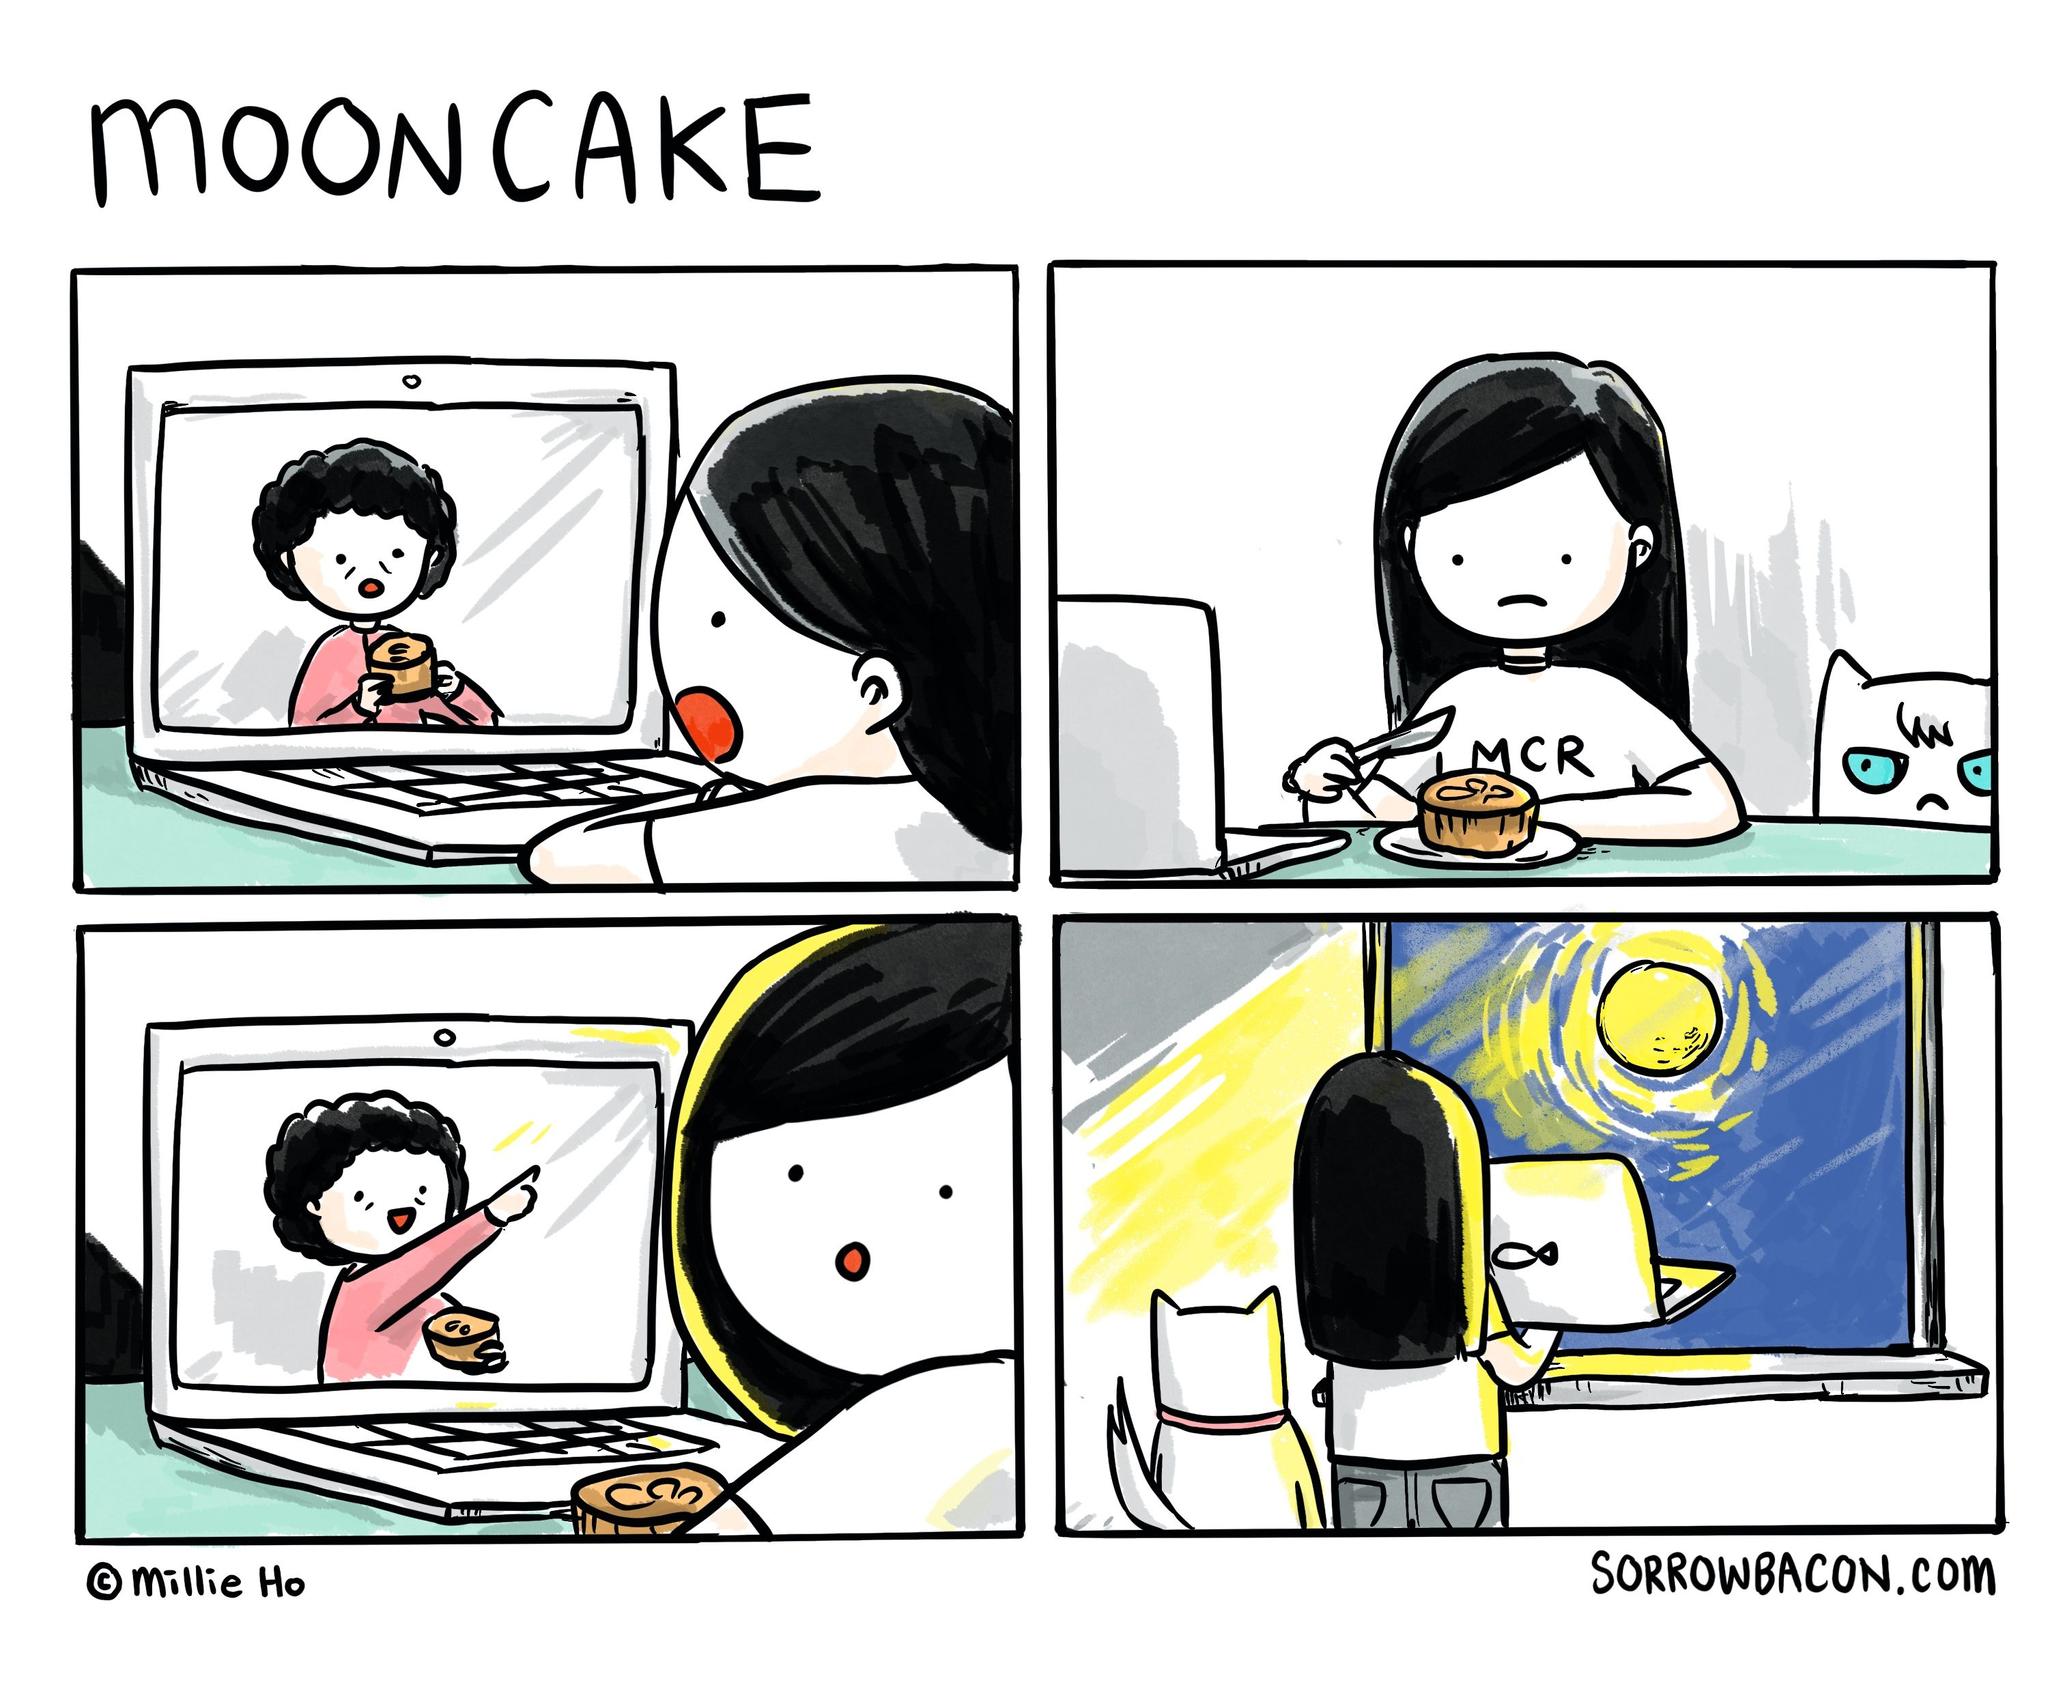 Mooncake sorrowbacon comic